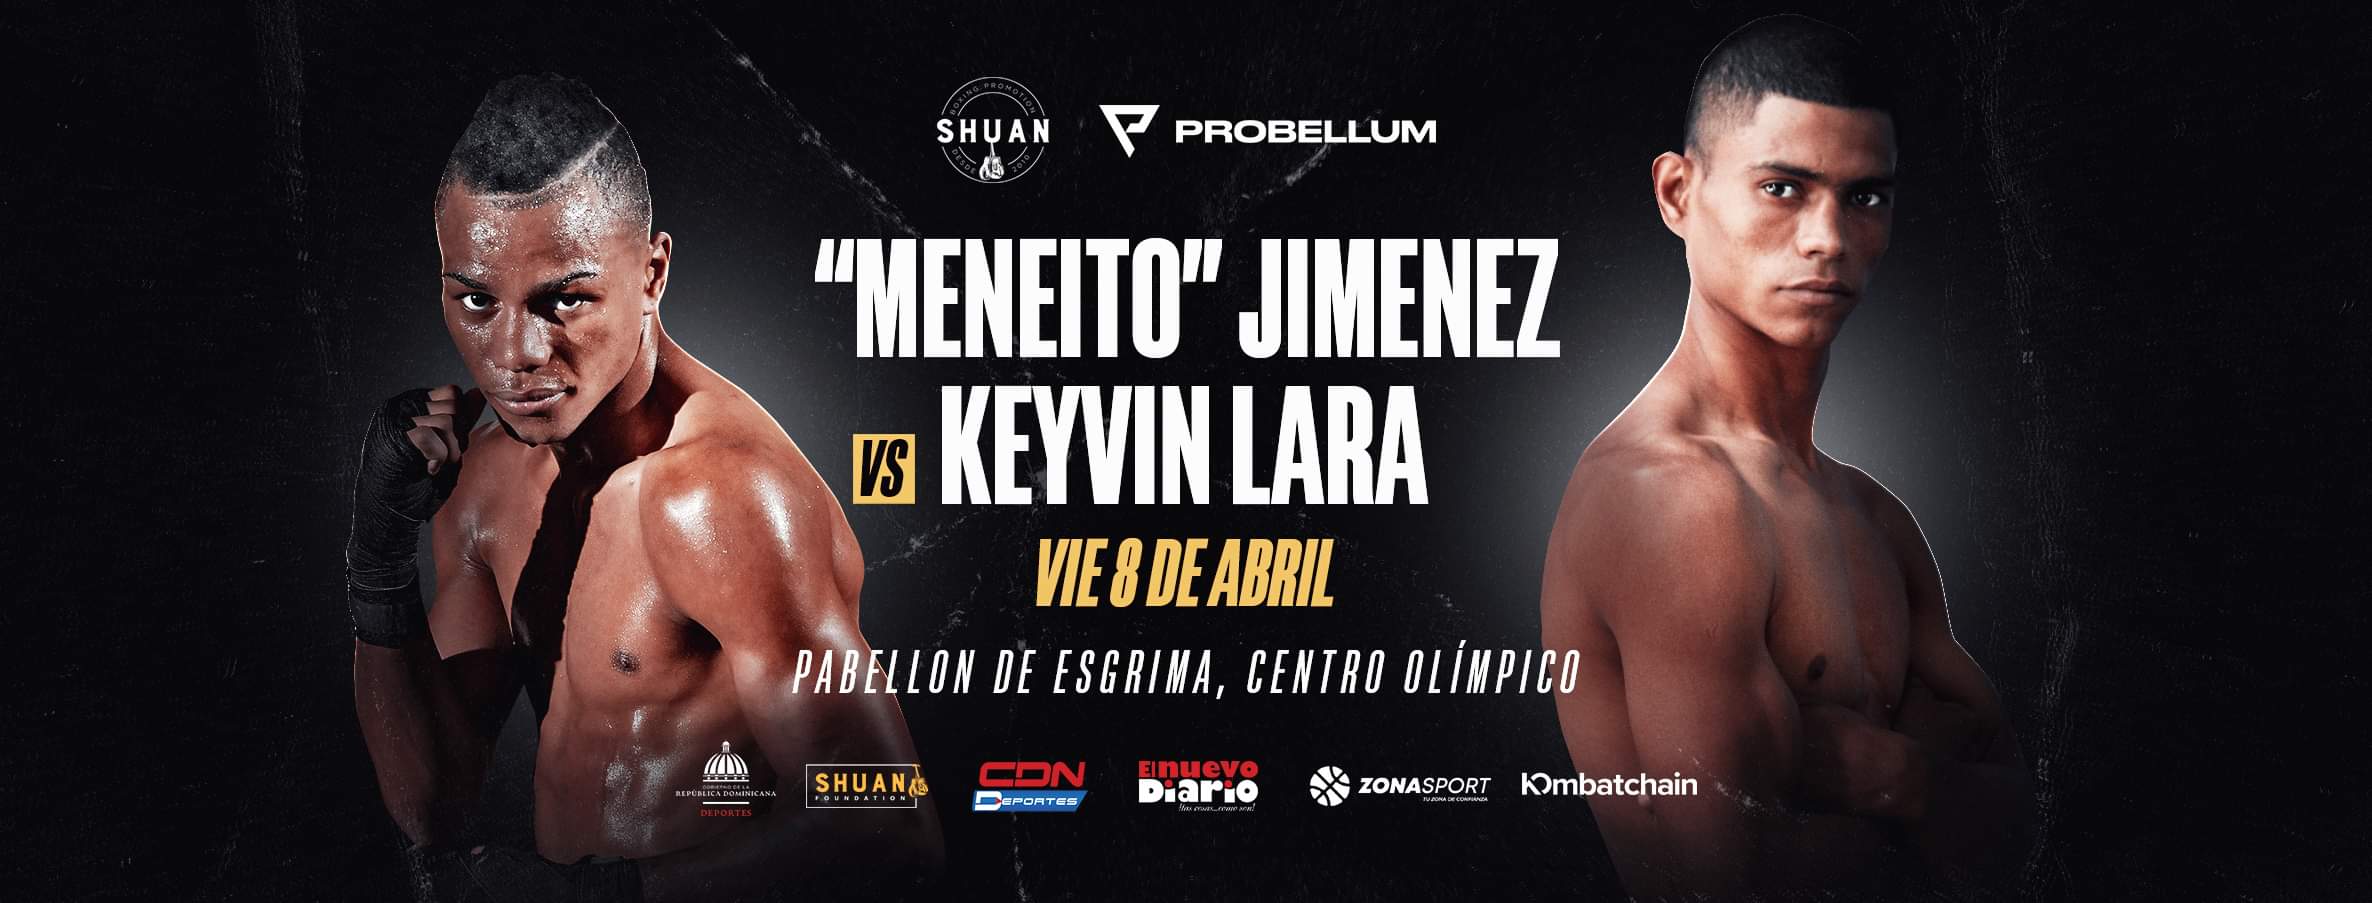 Meneito Jiménez & Keyvin Lara